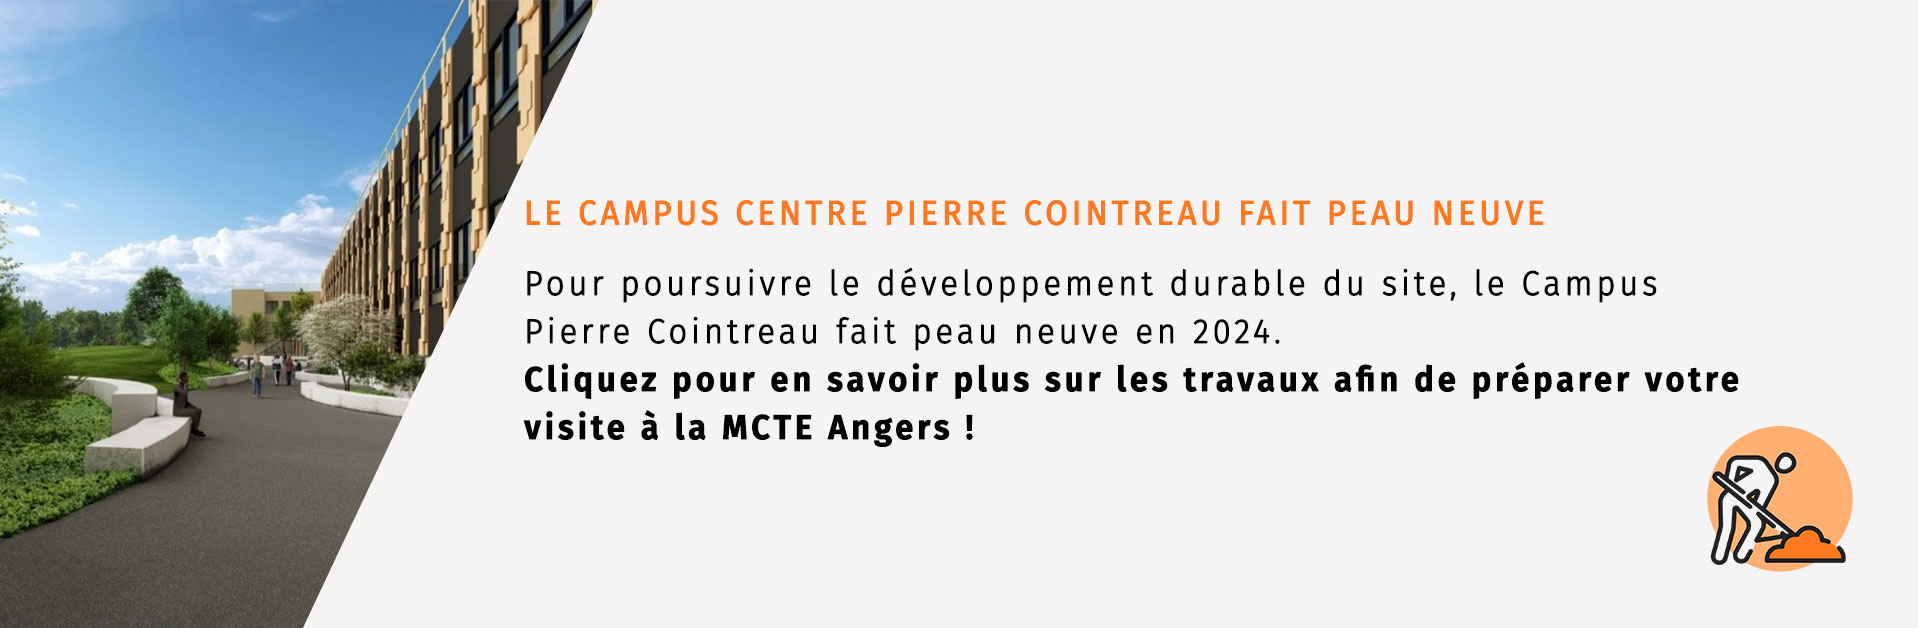 Travaux au Centre Pierre Cointreau à Angers, cliquez sur l'image pour en savoir plus et préparez votre venue à la MCTE Angers.